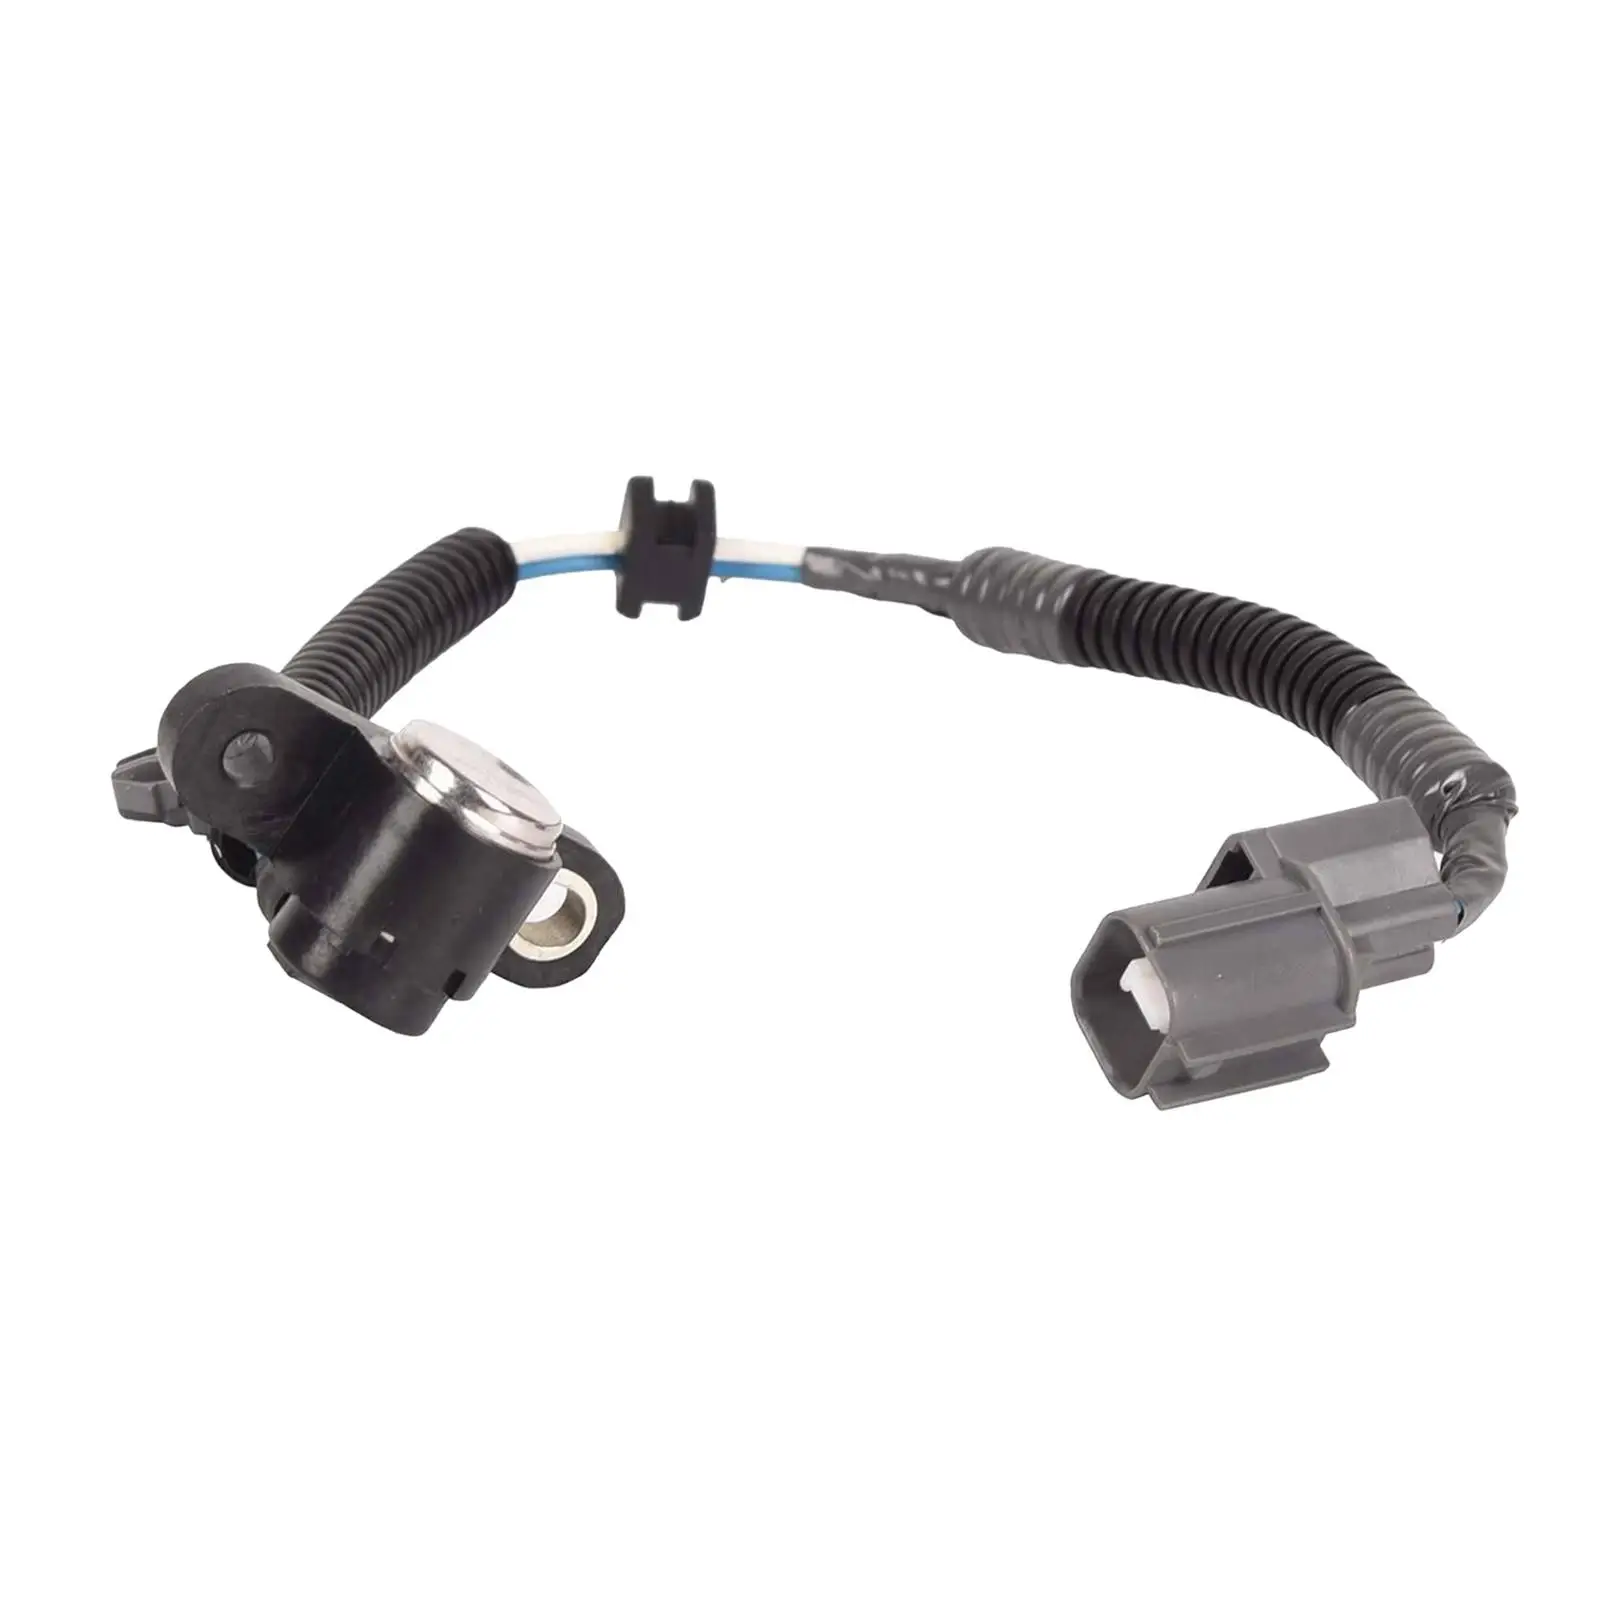 Crankshaft PULSE Position Sensor 37500P72A01 5S1627 Fits for Civic Del Sol Motors Parts